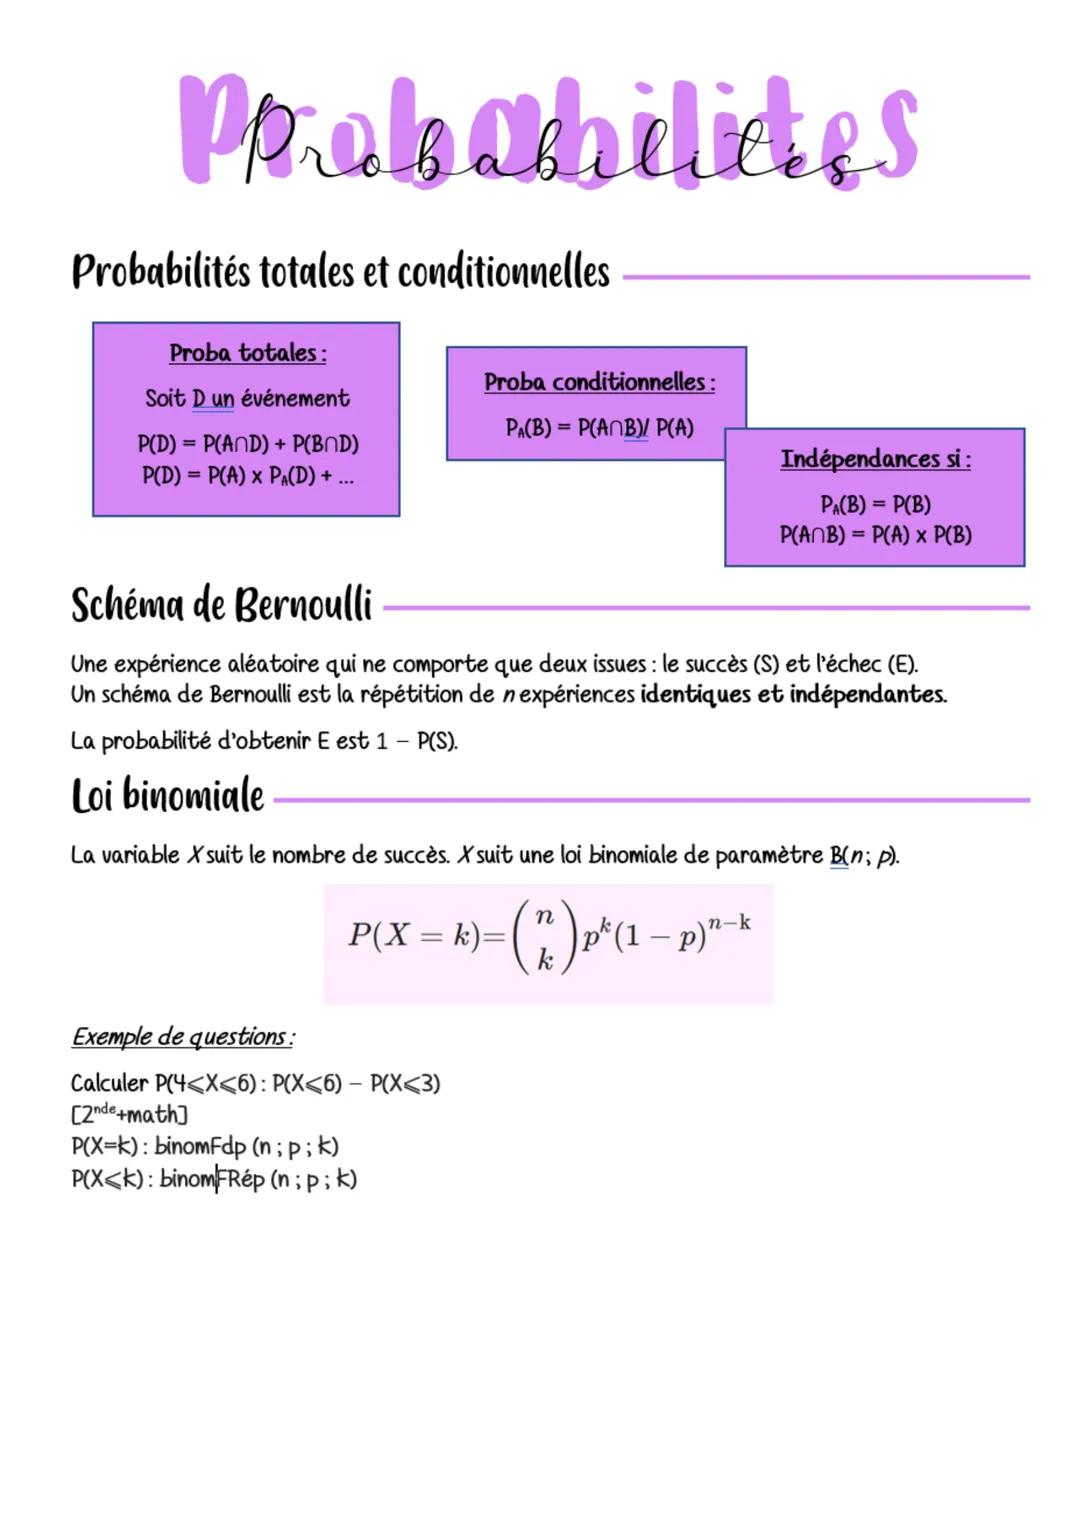 Perobachilides
Probabilités totales et conditionnelles
Proba totales:
Soit D un événement
P(D) = P(AND) + P(BND)
P(D) = P(A) × P₁(D) + ...
E